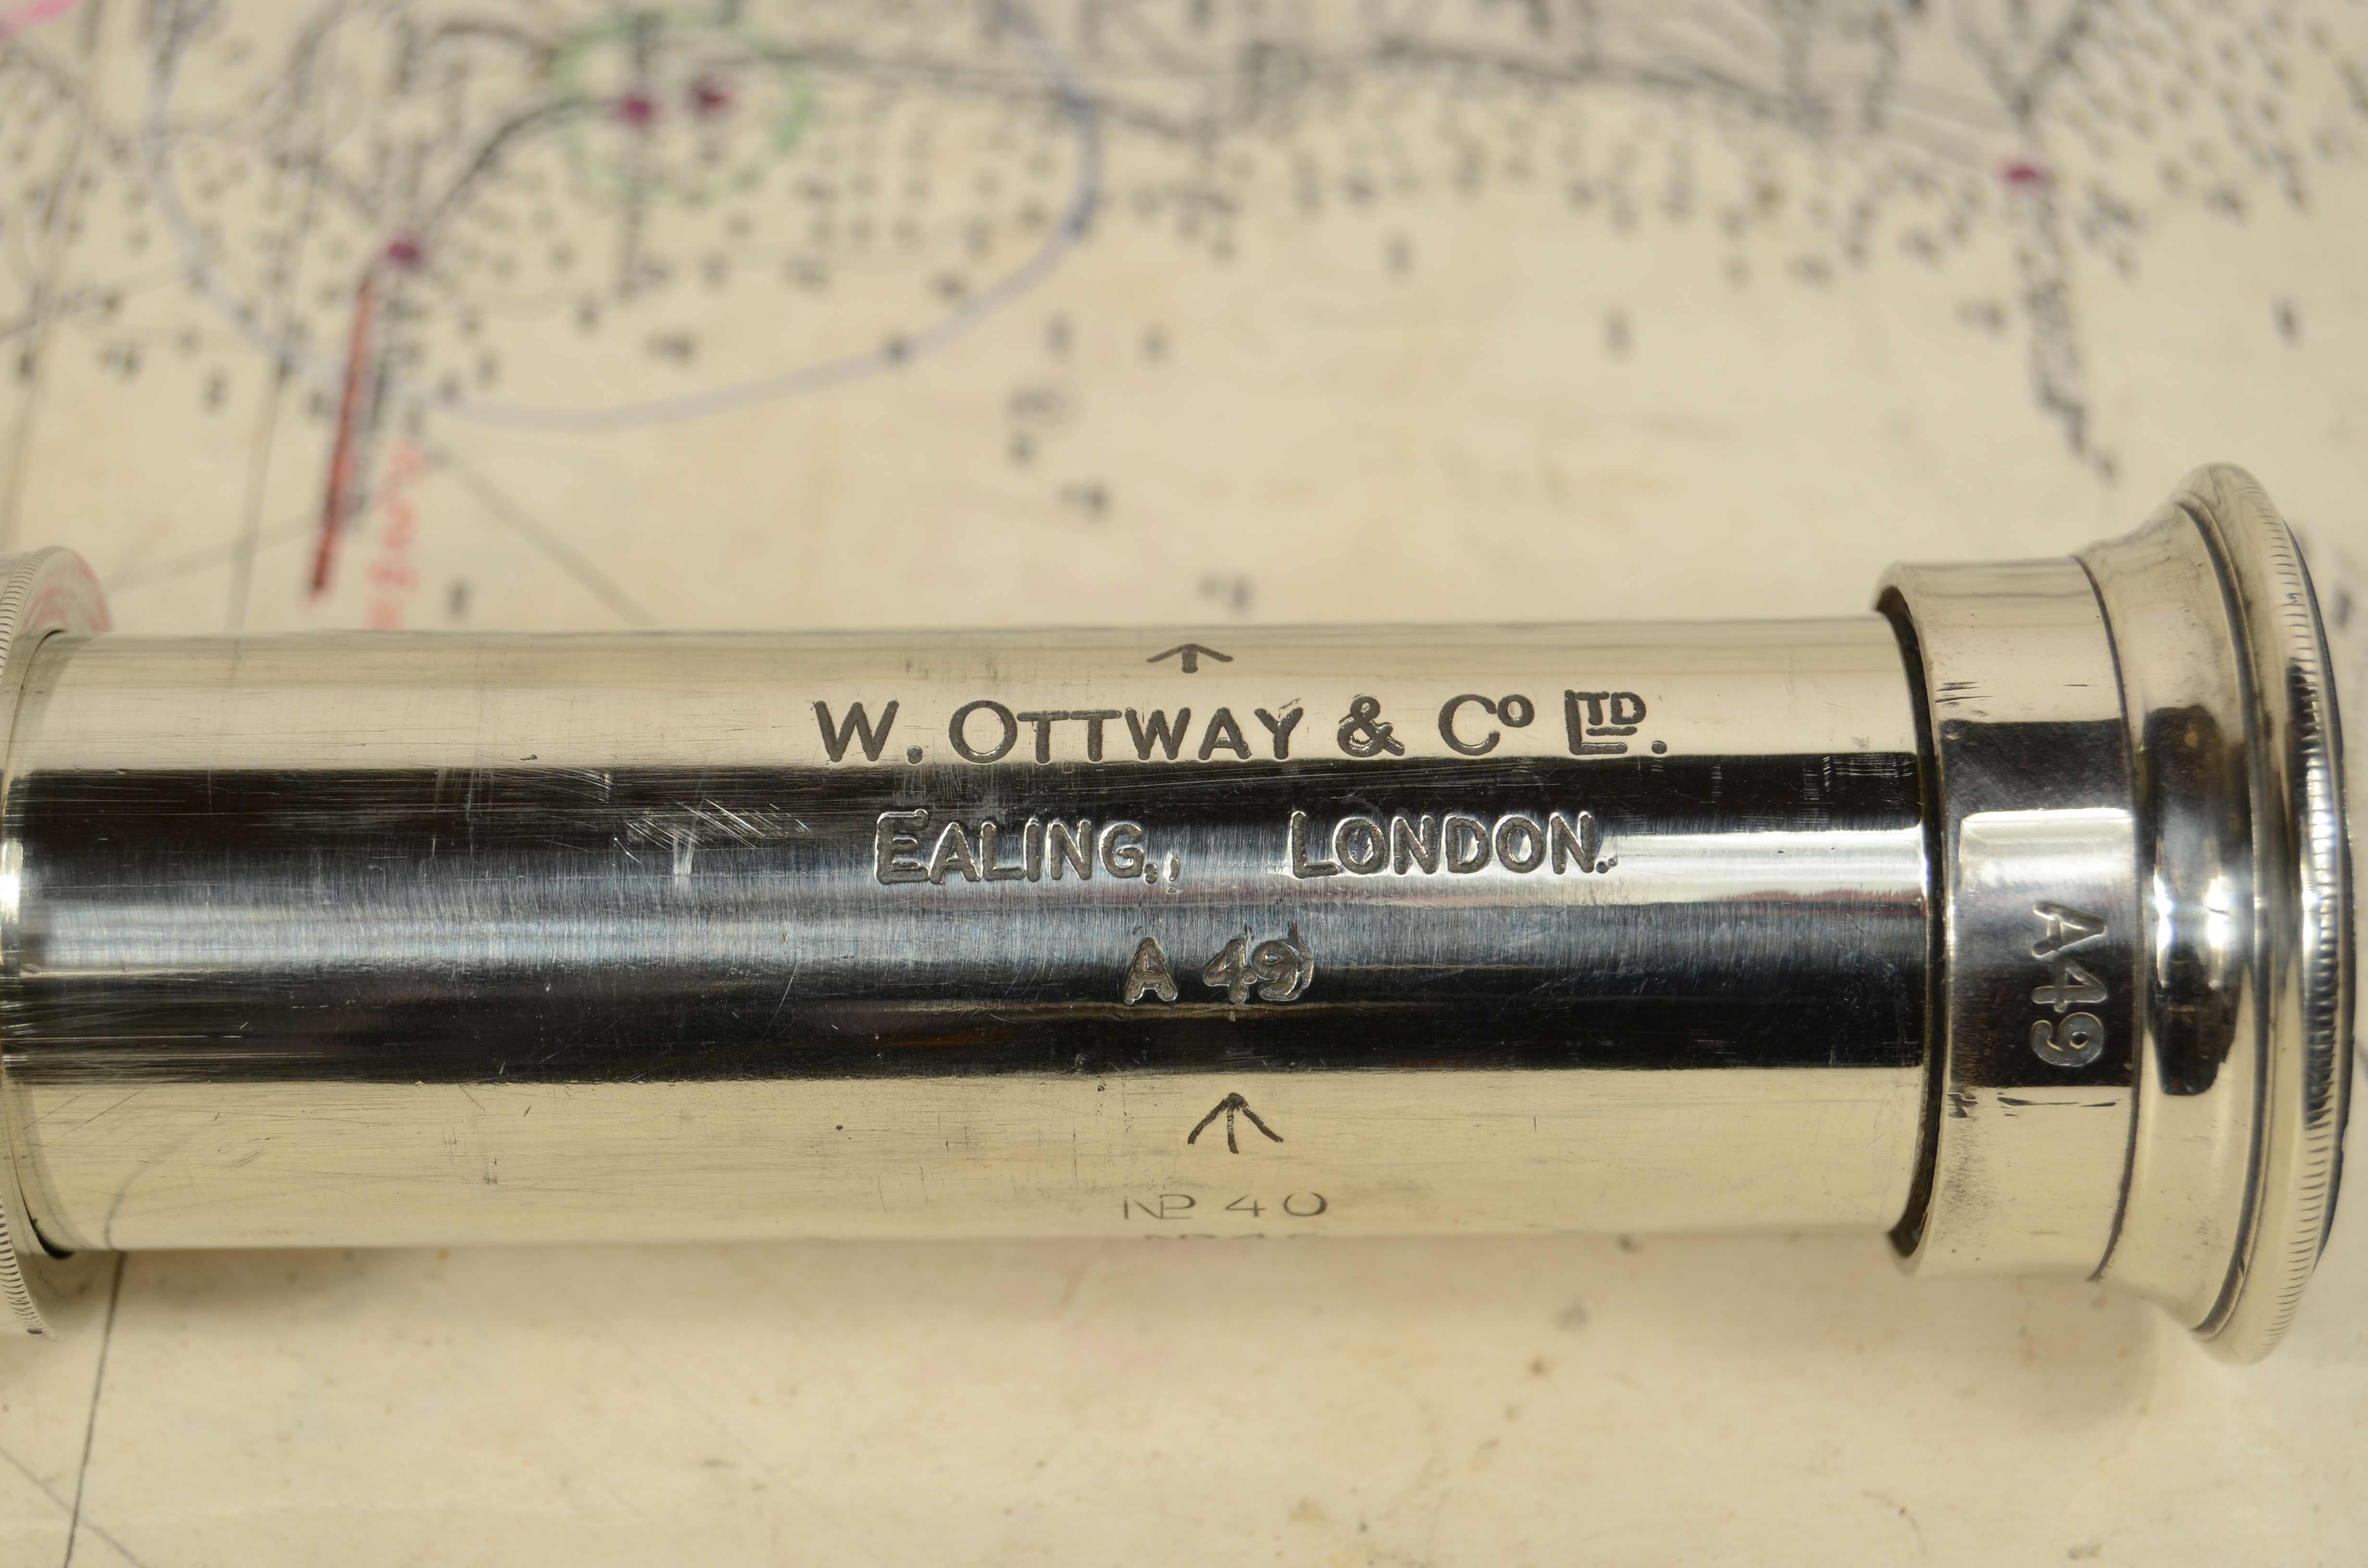 Télescope en laiton chromé et cuir signé W. OTTWAY & Co Ltd  Ealing  Londres  A49 utilisé par les officiers de l'armée britannique pendant la Première Guerre mondiale. 
Mise au point simple, diamètre focal cm 3 - pouces 1,2, longueur maximale cm